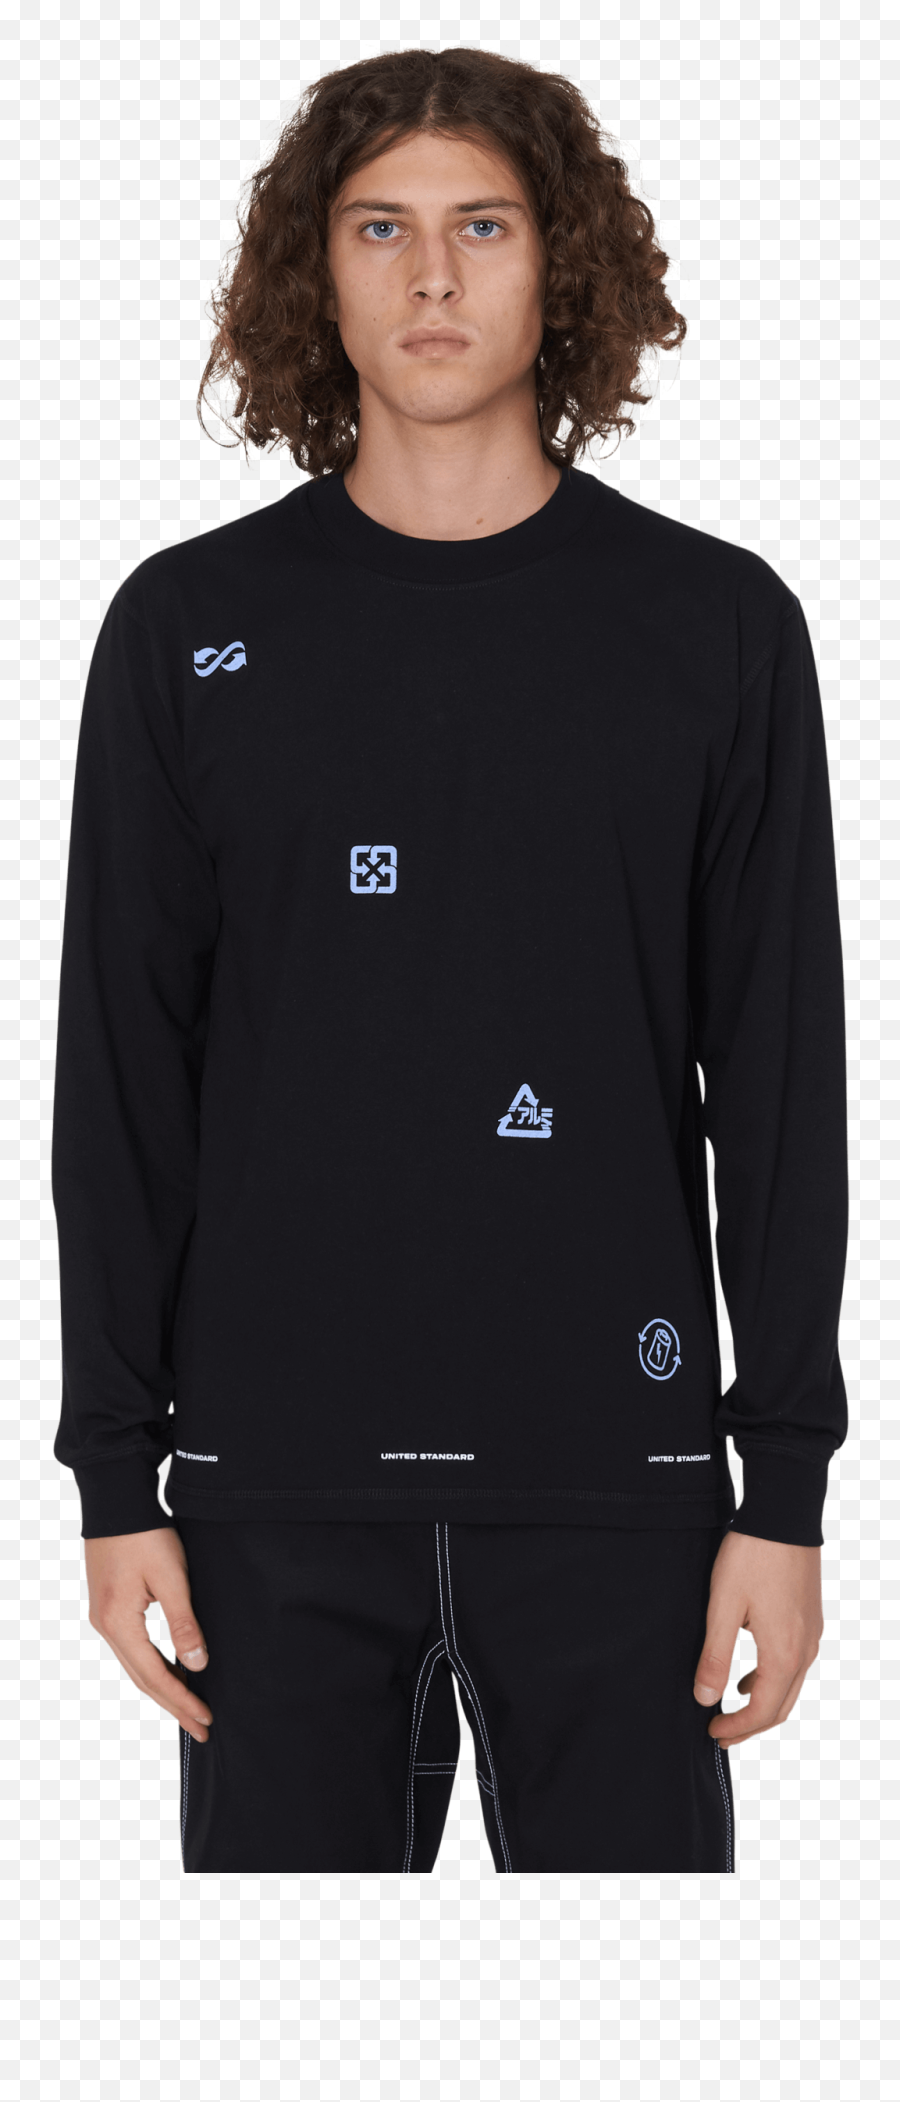 Virgil Logos Long Sleeves - Asics Kiko Insulated Jacket Emoji,T Shirt Logos